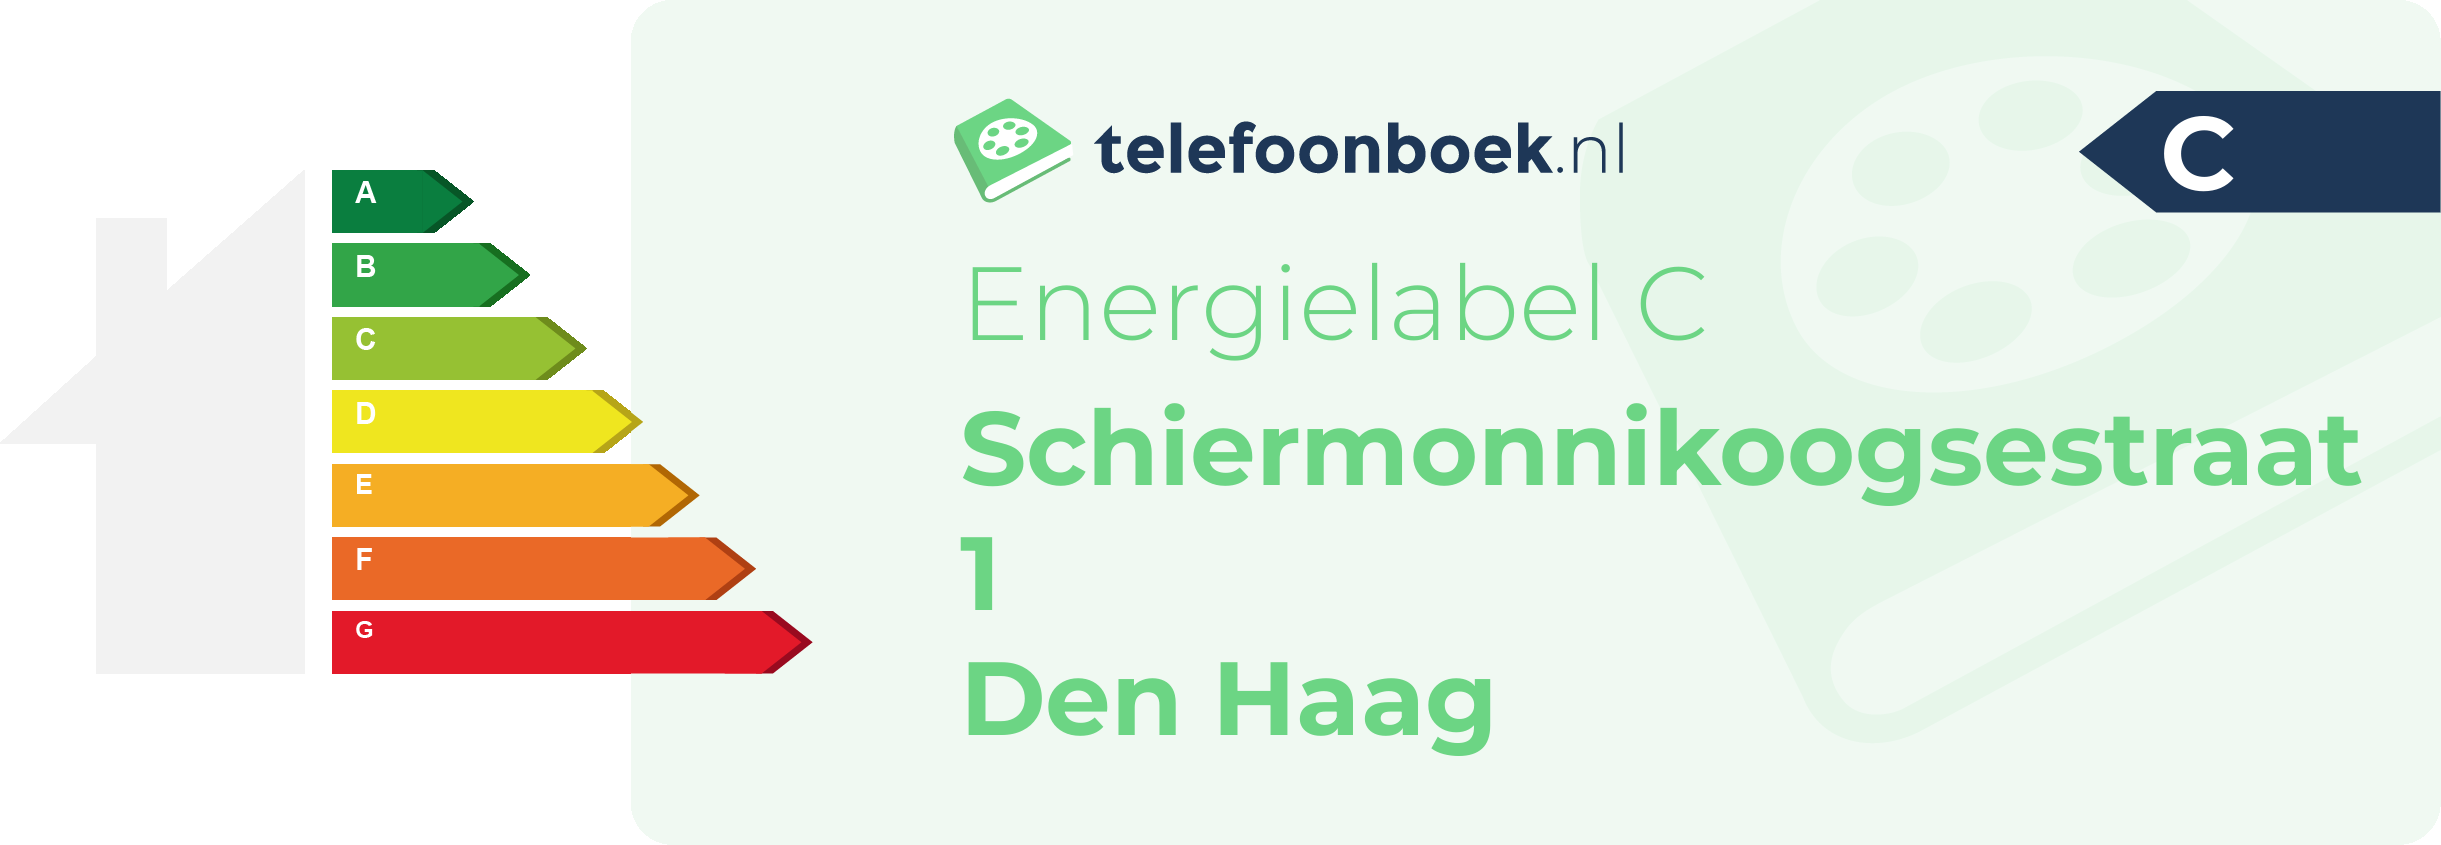 Energielabel Schiermonnikoogsestraat 1 Den Haag